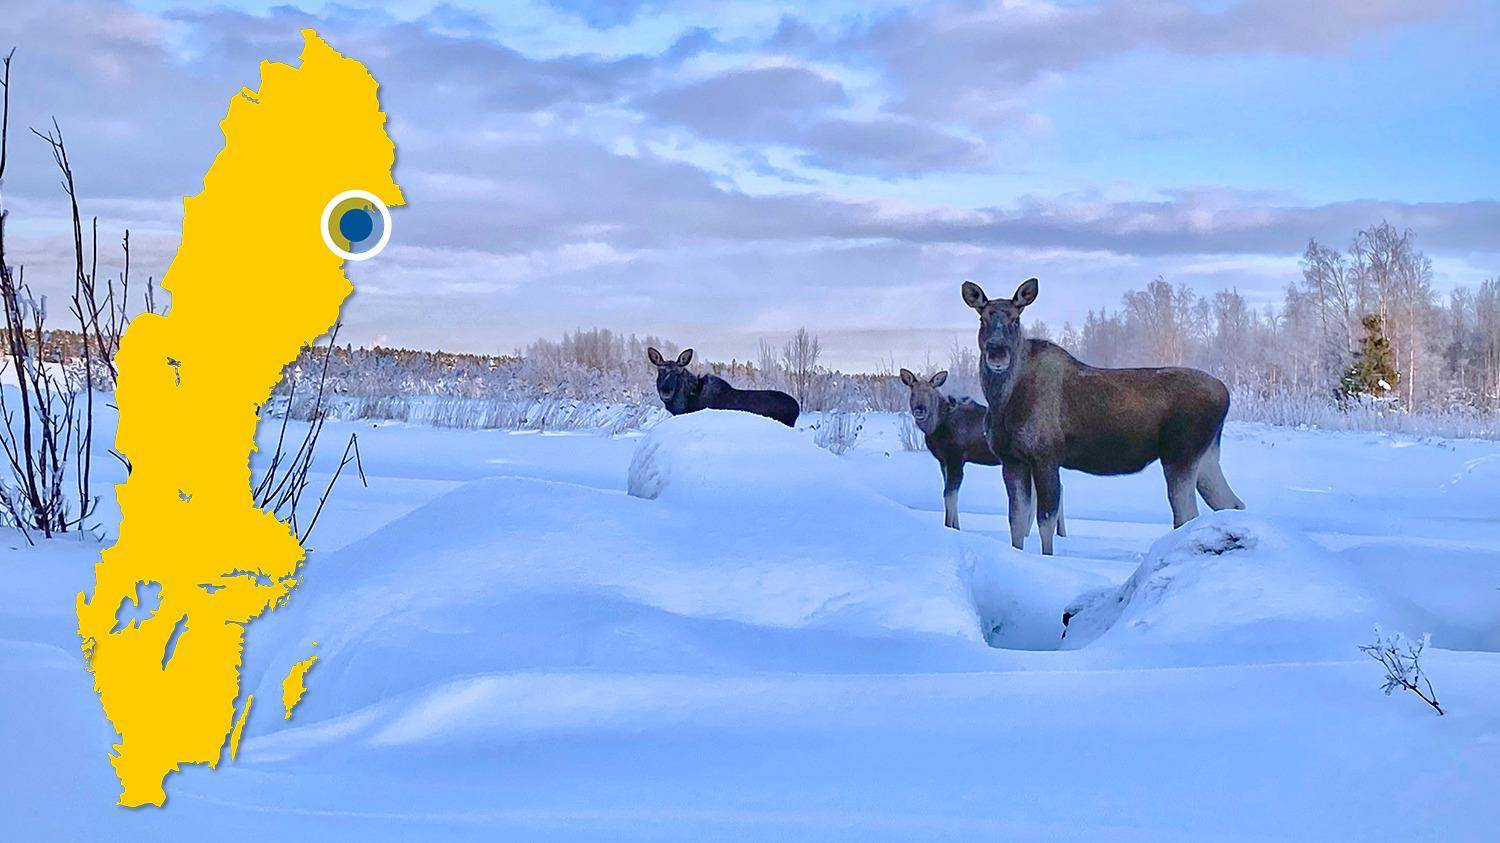 Drie elanden staan in een besneeuwd landschap. Er is een gele kaart van Zweden met een blauwe stip die Kallax markeert.